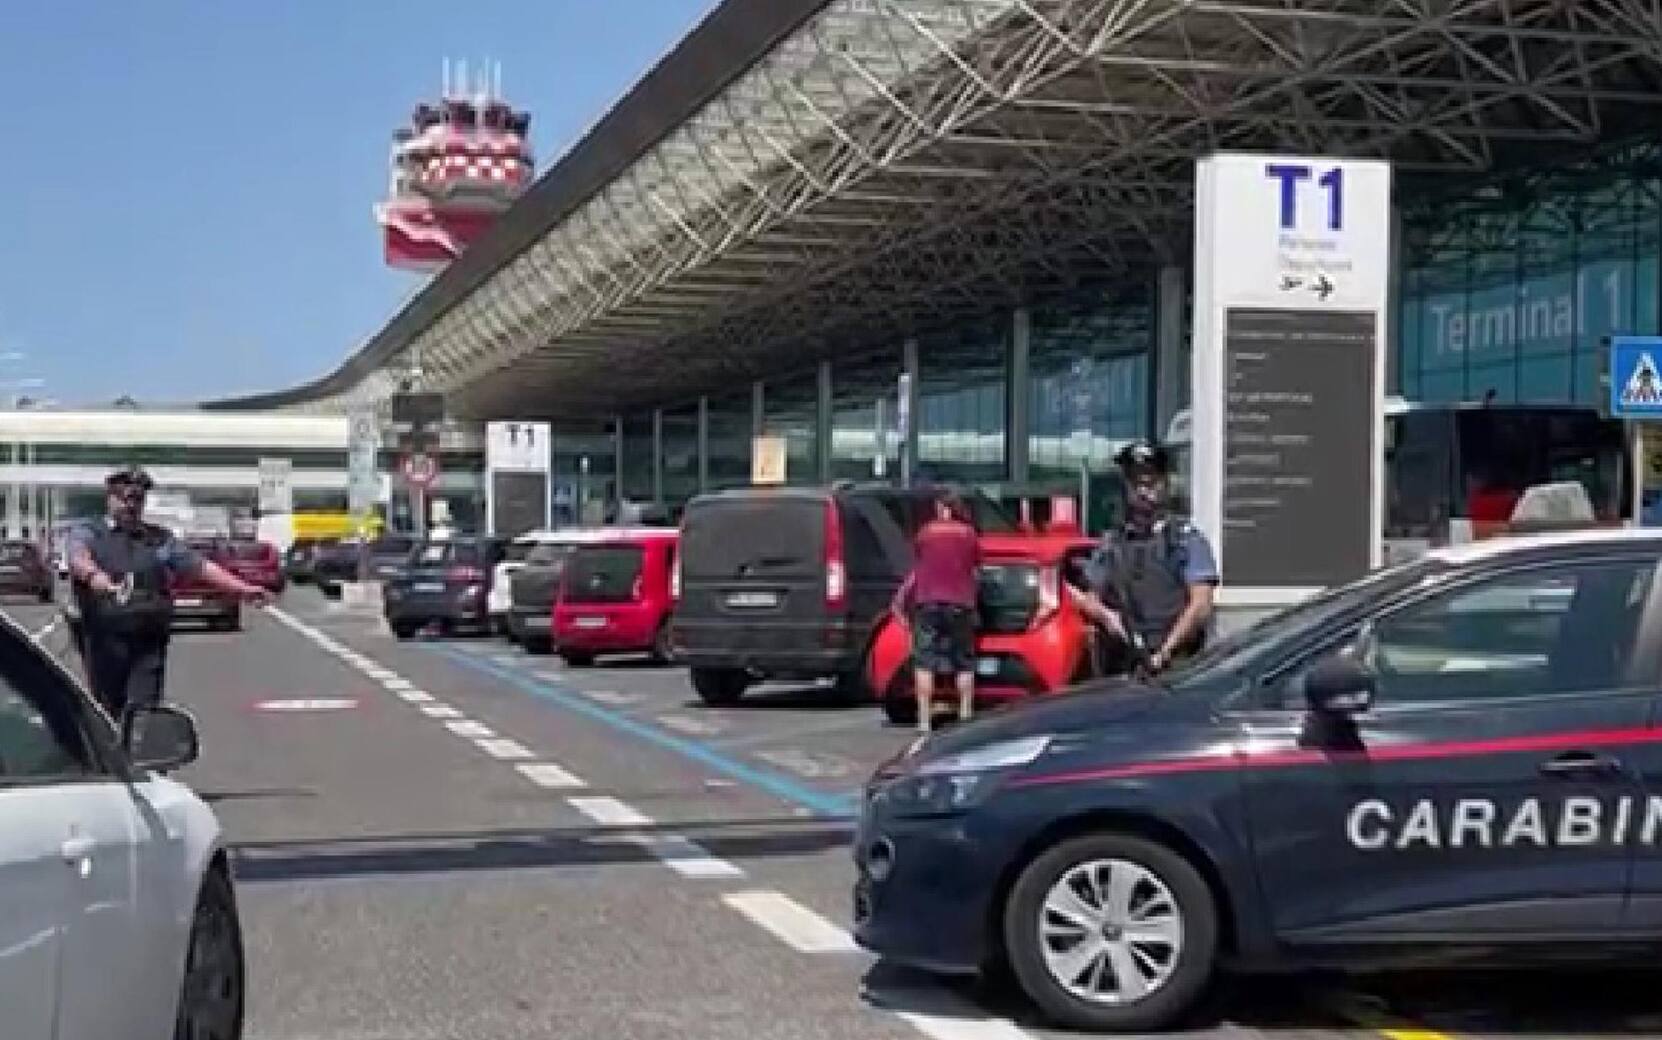 Un momento dei quotidiani controlli, da parte dei Carabinieri della Compagnia Aeroporti di Roma, presso lo scalo aeroportuale internazionale "Leonardo Da Vinci" di Fiumicino, Roma, 24 Luglio 2022. ANSA/US CARABINIERI

+++NO SALES, EDITORIAL USE ONLY+++